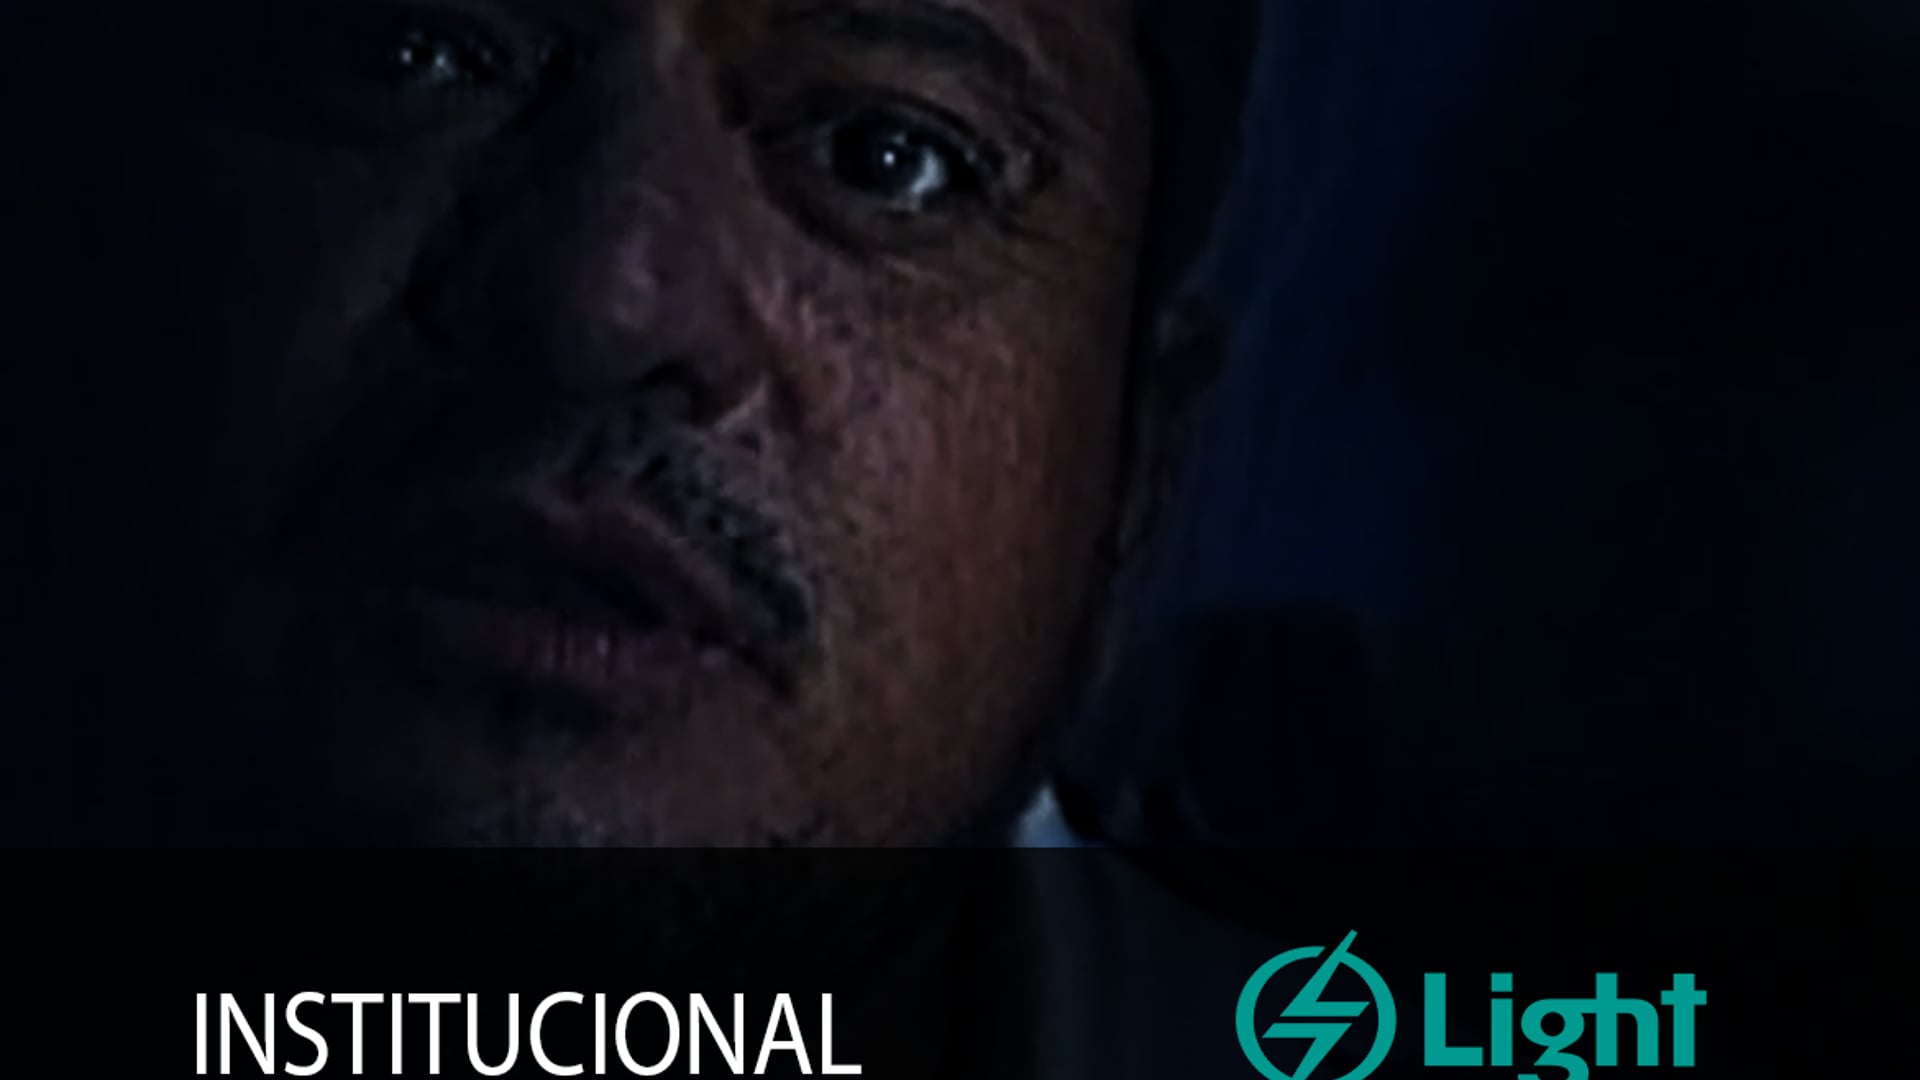 Hilton Castro - comercial "Light" personagem: João